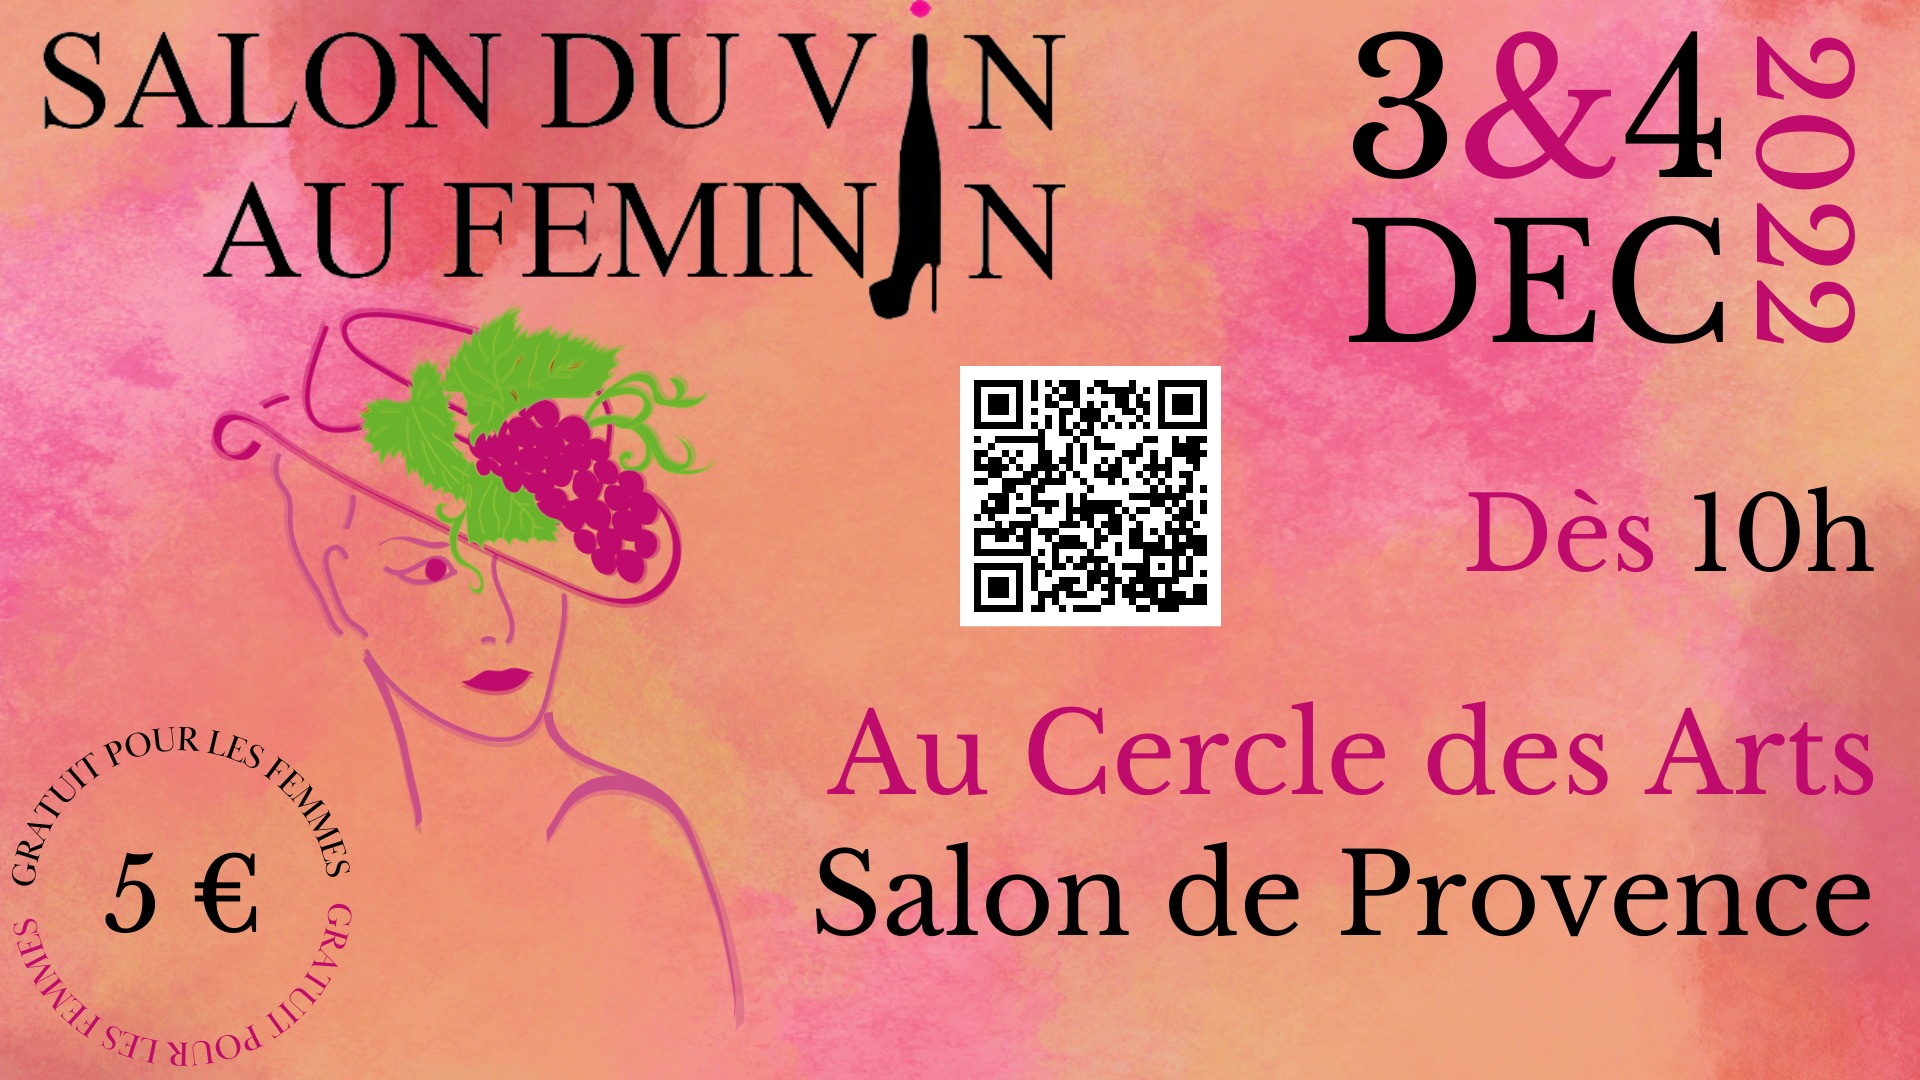 Salon du Vin au Féminin